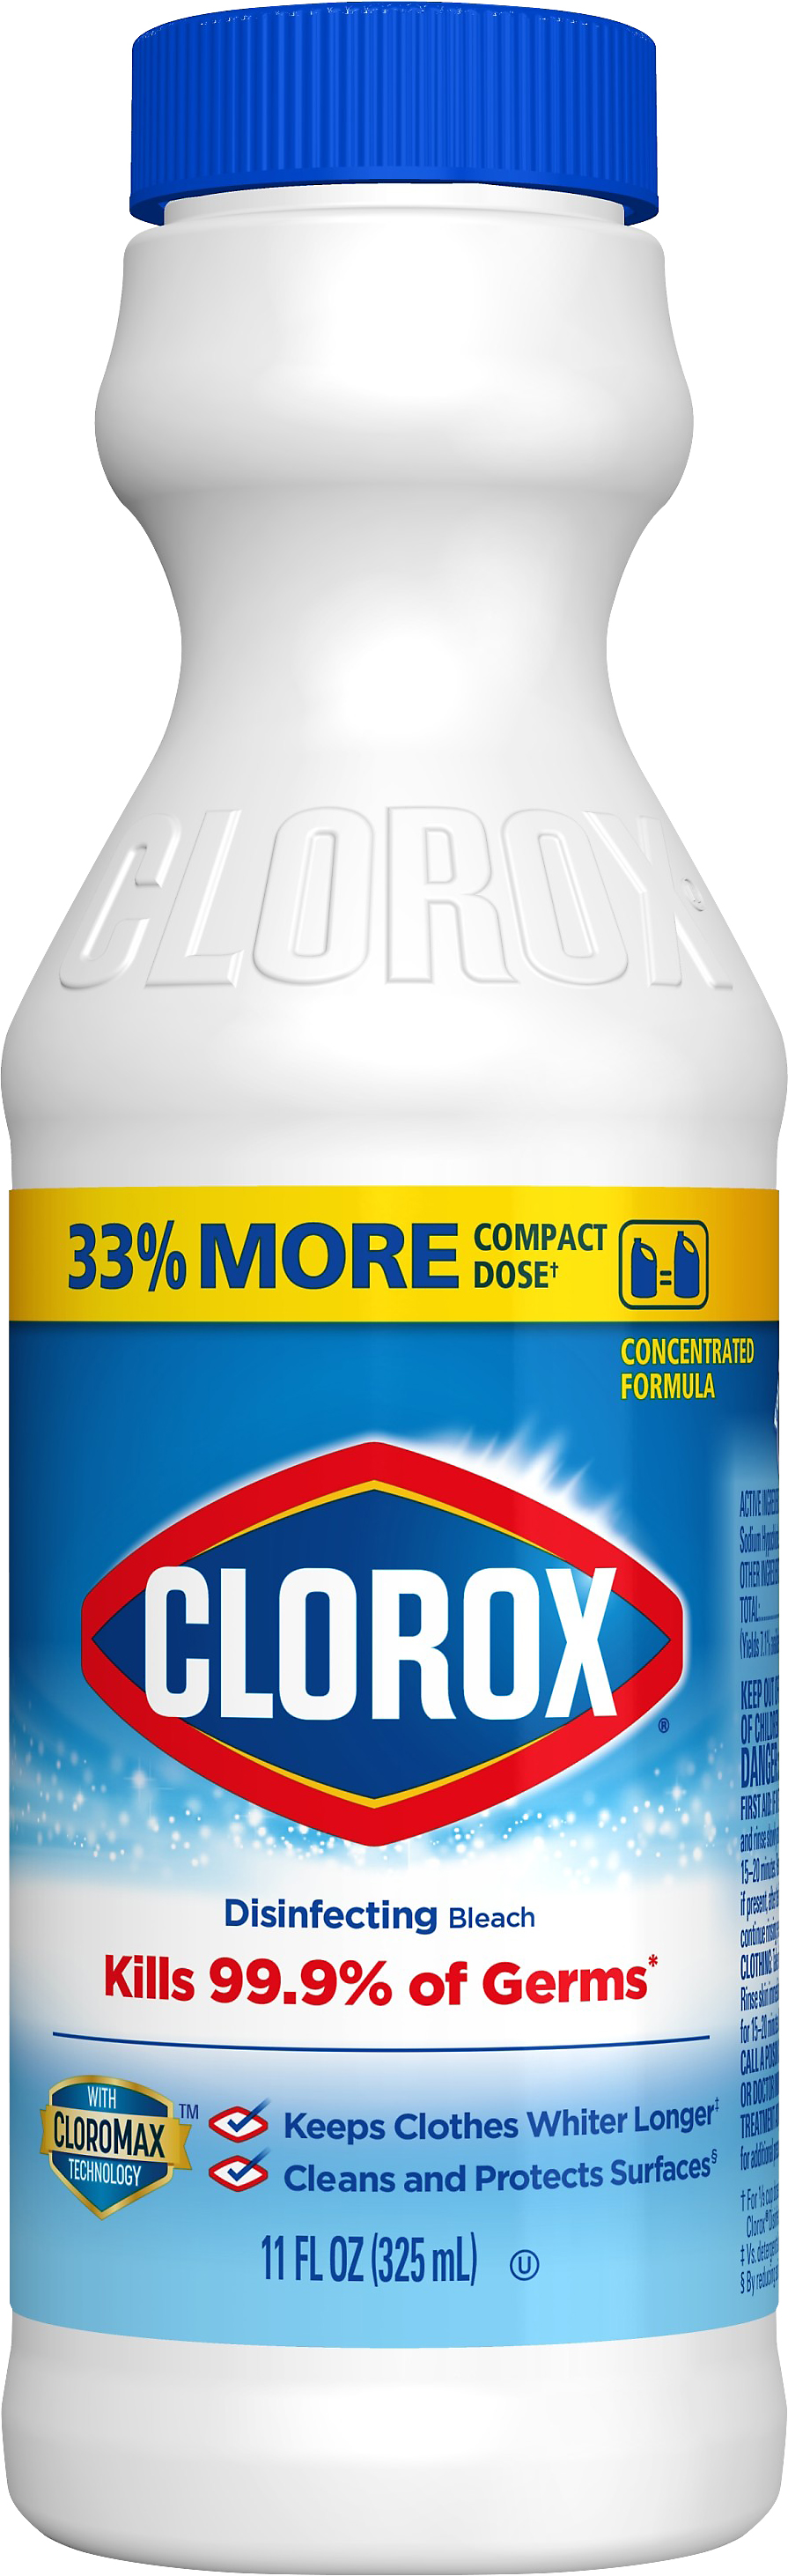 Clorox Disinfecting Bleach 11 oz